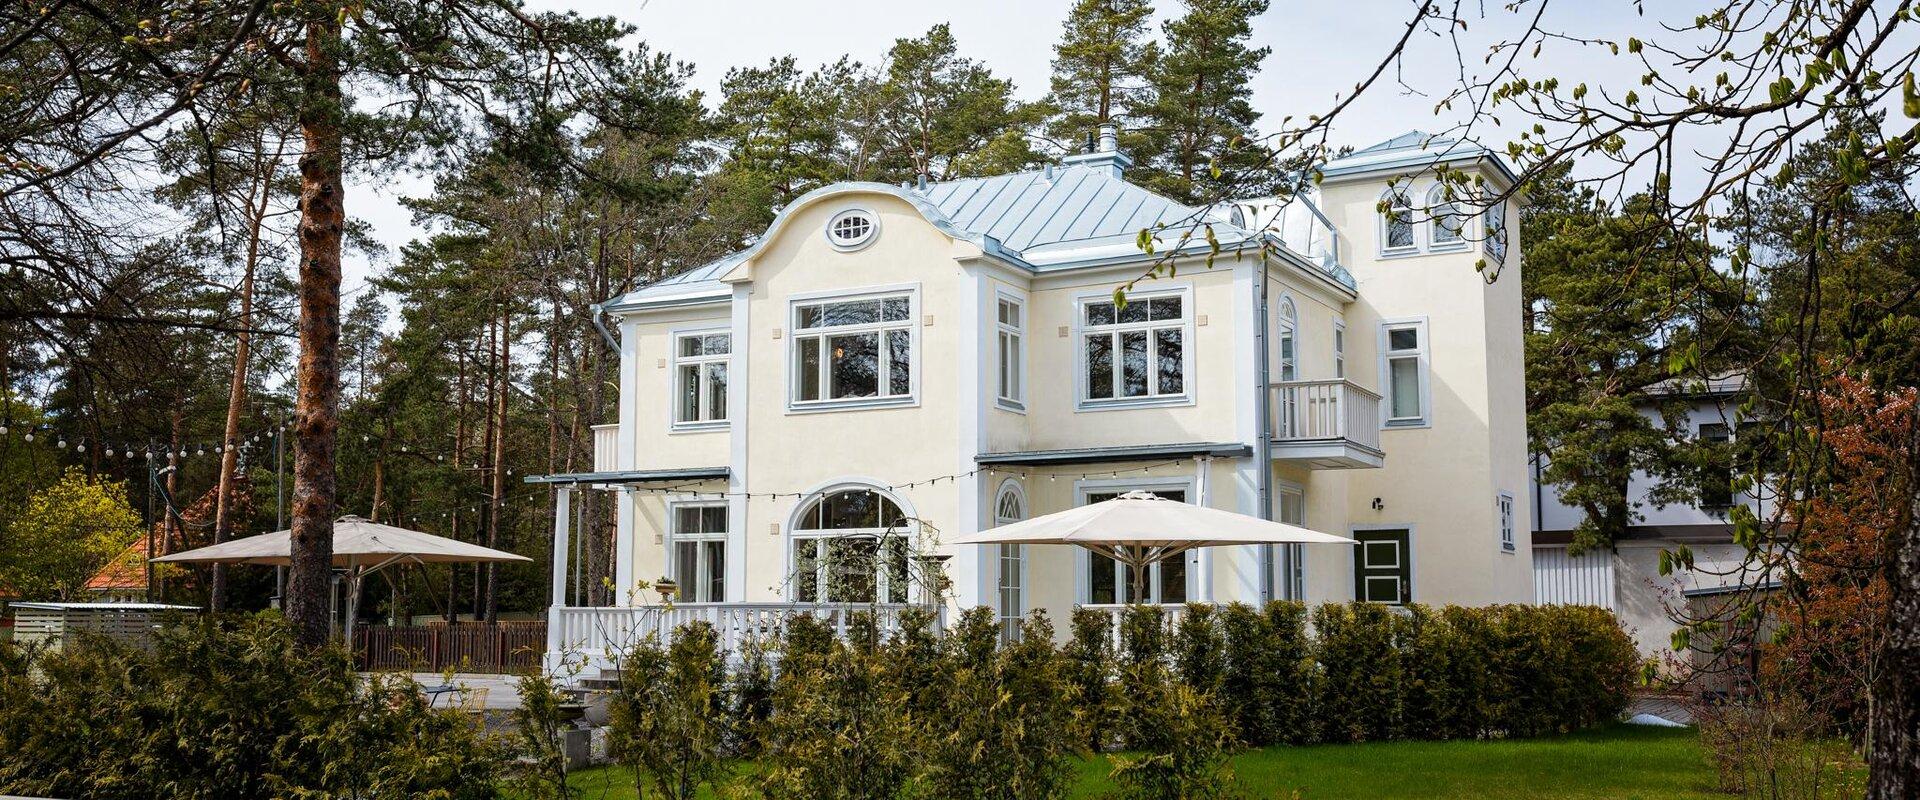 Die Paju Villa ist eine wunderschöne Prachtvilla im Wohnviertel Nõmme in Tallinn, wo sowohl das herrliche Interieur des Hauses, himmlisch leckeres Ess